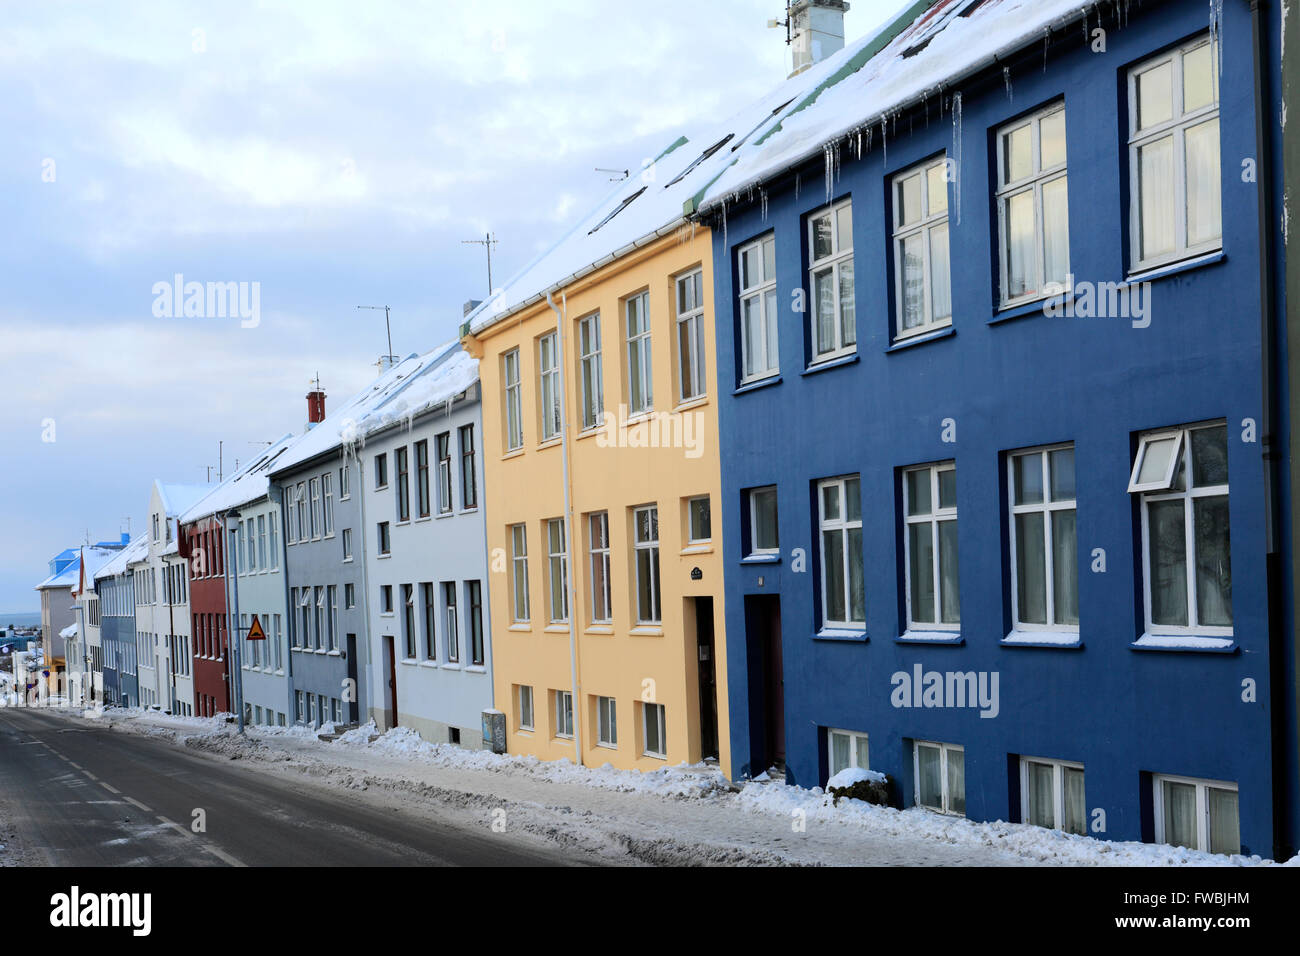 In inverno la neve, diverse case colorate, città di Reykjavik, Islanda Foto Stock